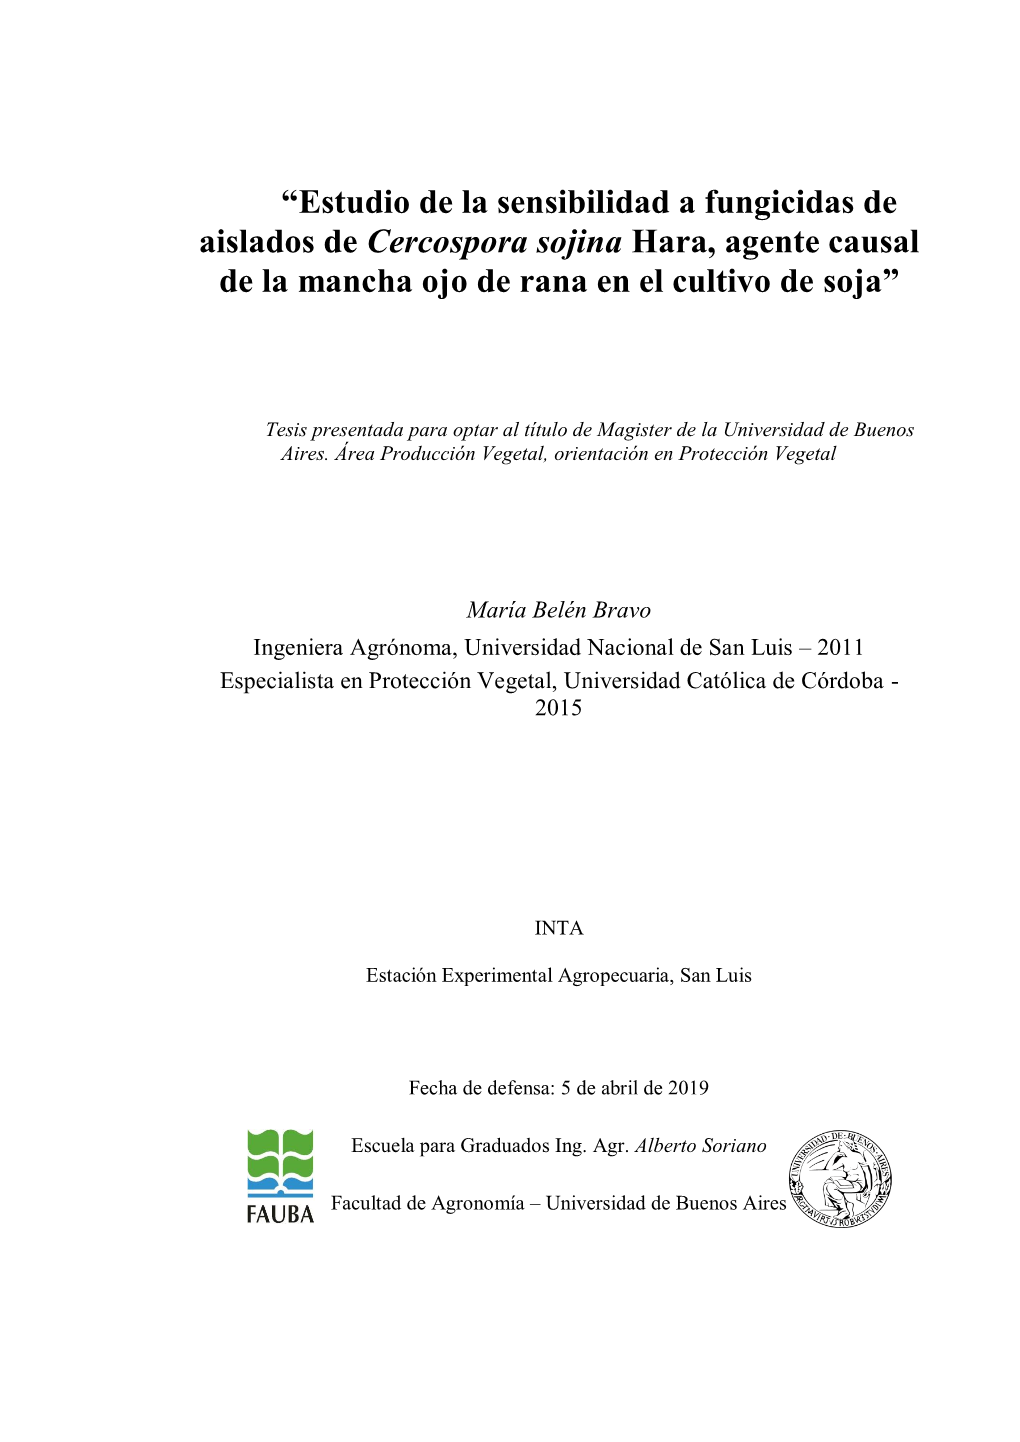 “Estudio De La Sensibilidad a Fungicidas De Aislados De Cercospora Sojina Hara, Agente Causal De La Mancha Ojo De Rana En El Cultivo De Soja”